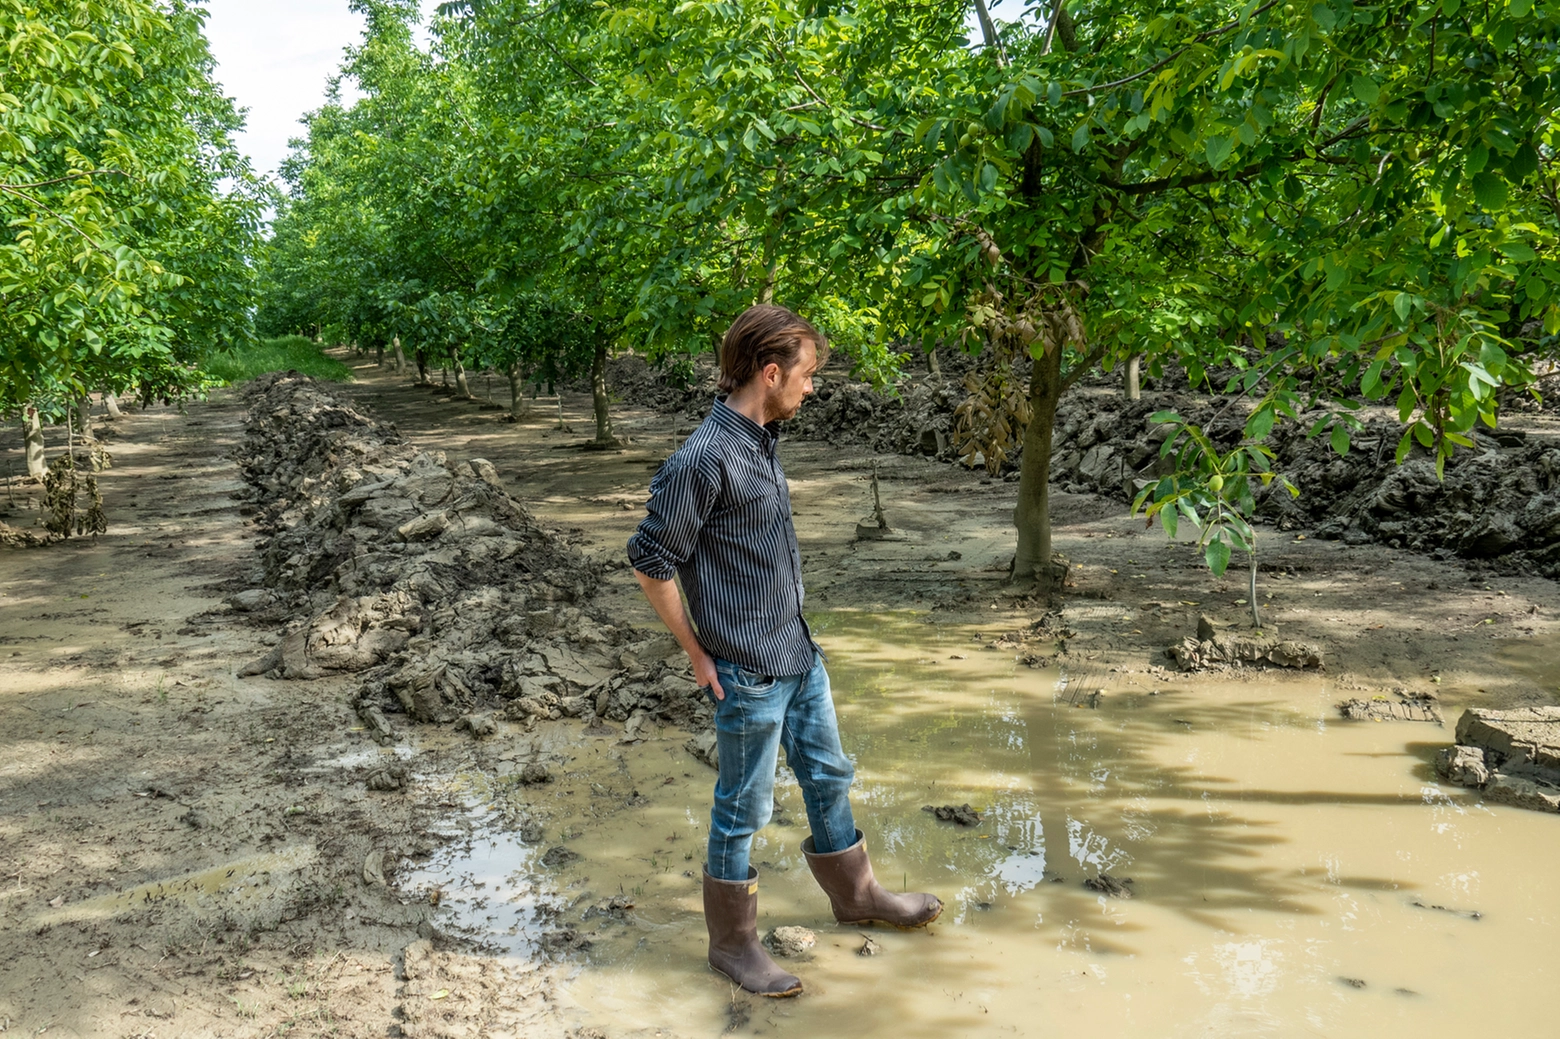 Ingenti i danni subiti dall'agricoltura in seguito all'alluvione del maggio scorso (Corelli)